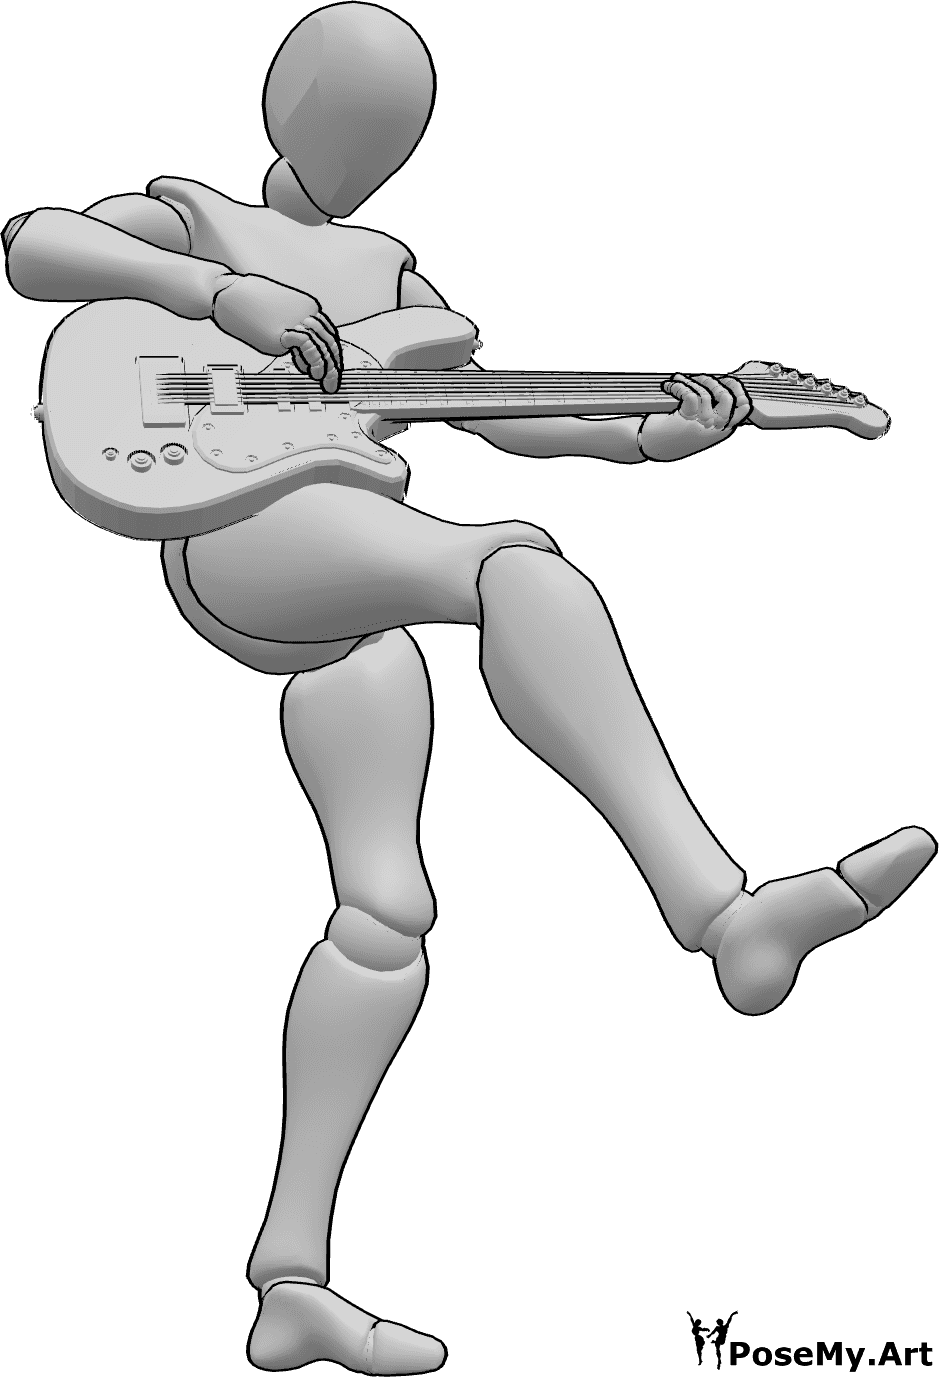 Riferimento alle pose- Donna che balla giocando in posa - Donna che balla, in piedi sul piede sinistro e sollevando la gamba destra mentre suona la chitarra elettrica